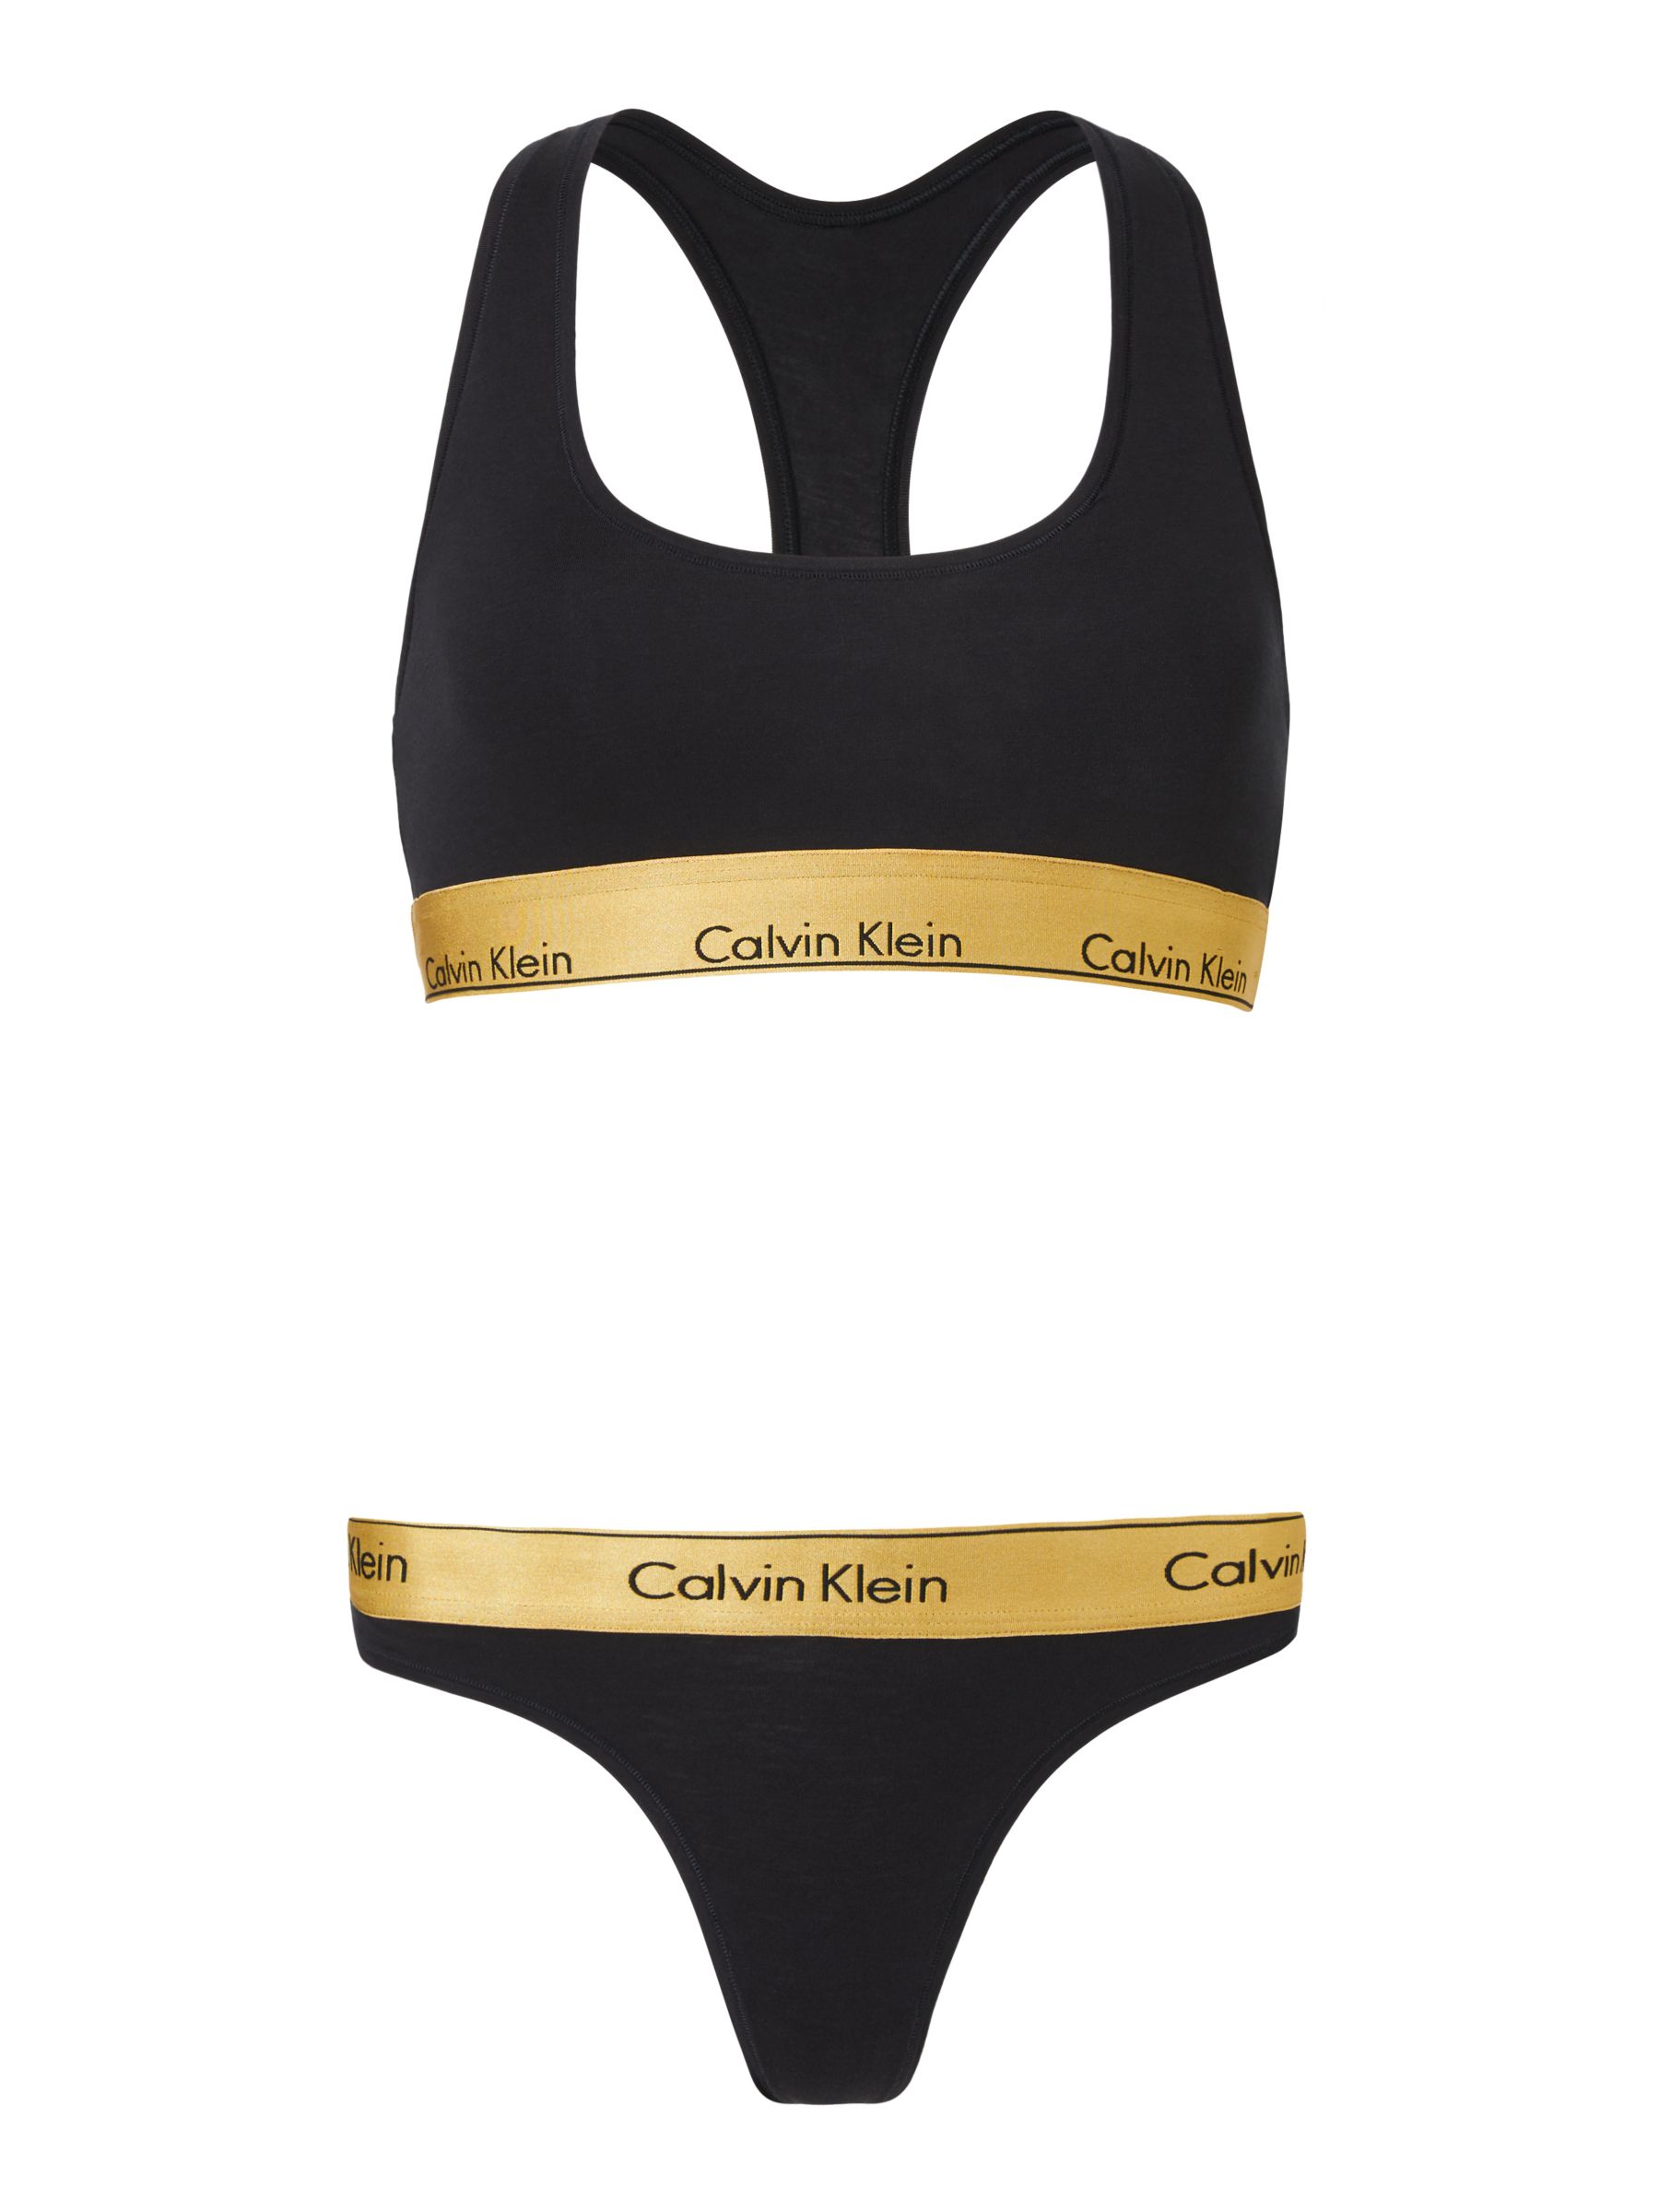 Calvin Klein Modern Cotton Bralette and Briefs Underwear Set 